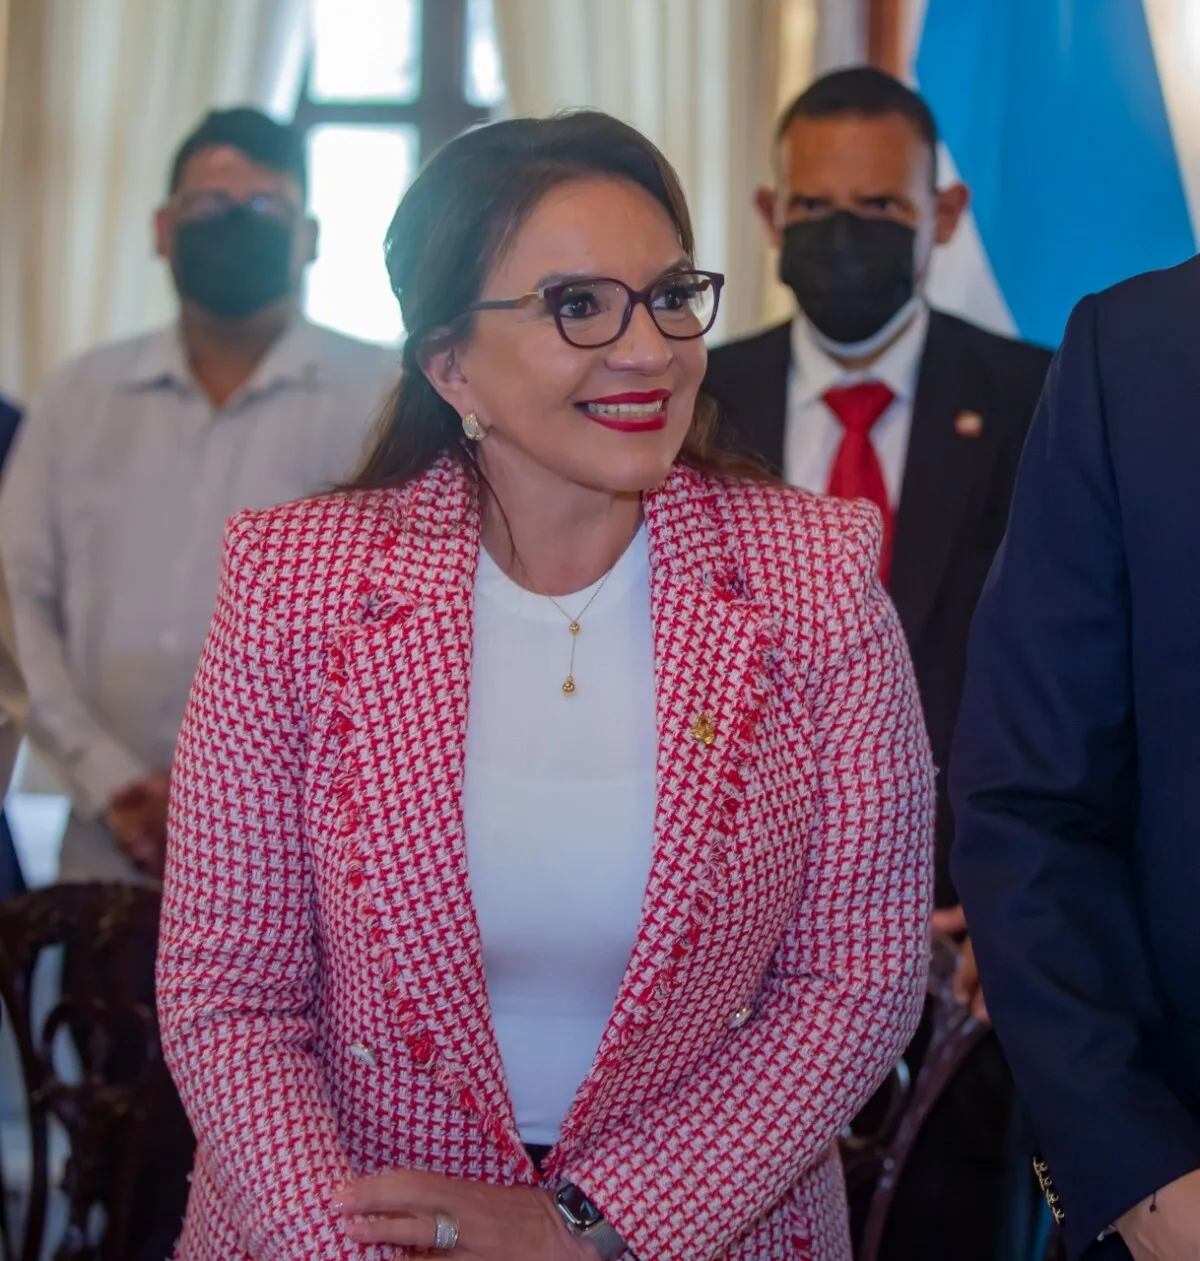 Presidenta Xiomara Castro: “Estoy agradecida con el presidente Luis Redondo porque ha cumplido los compromisos del Acuerdo Bicentenario”